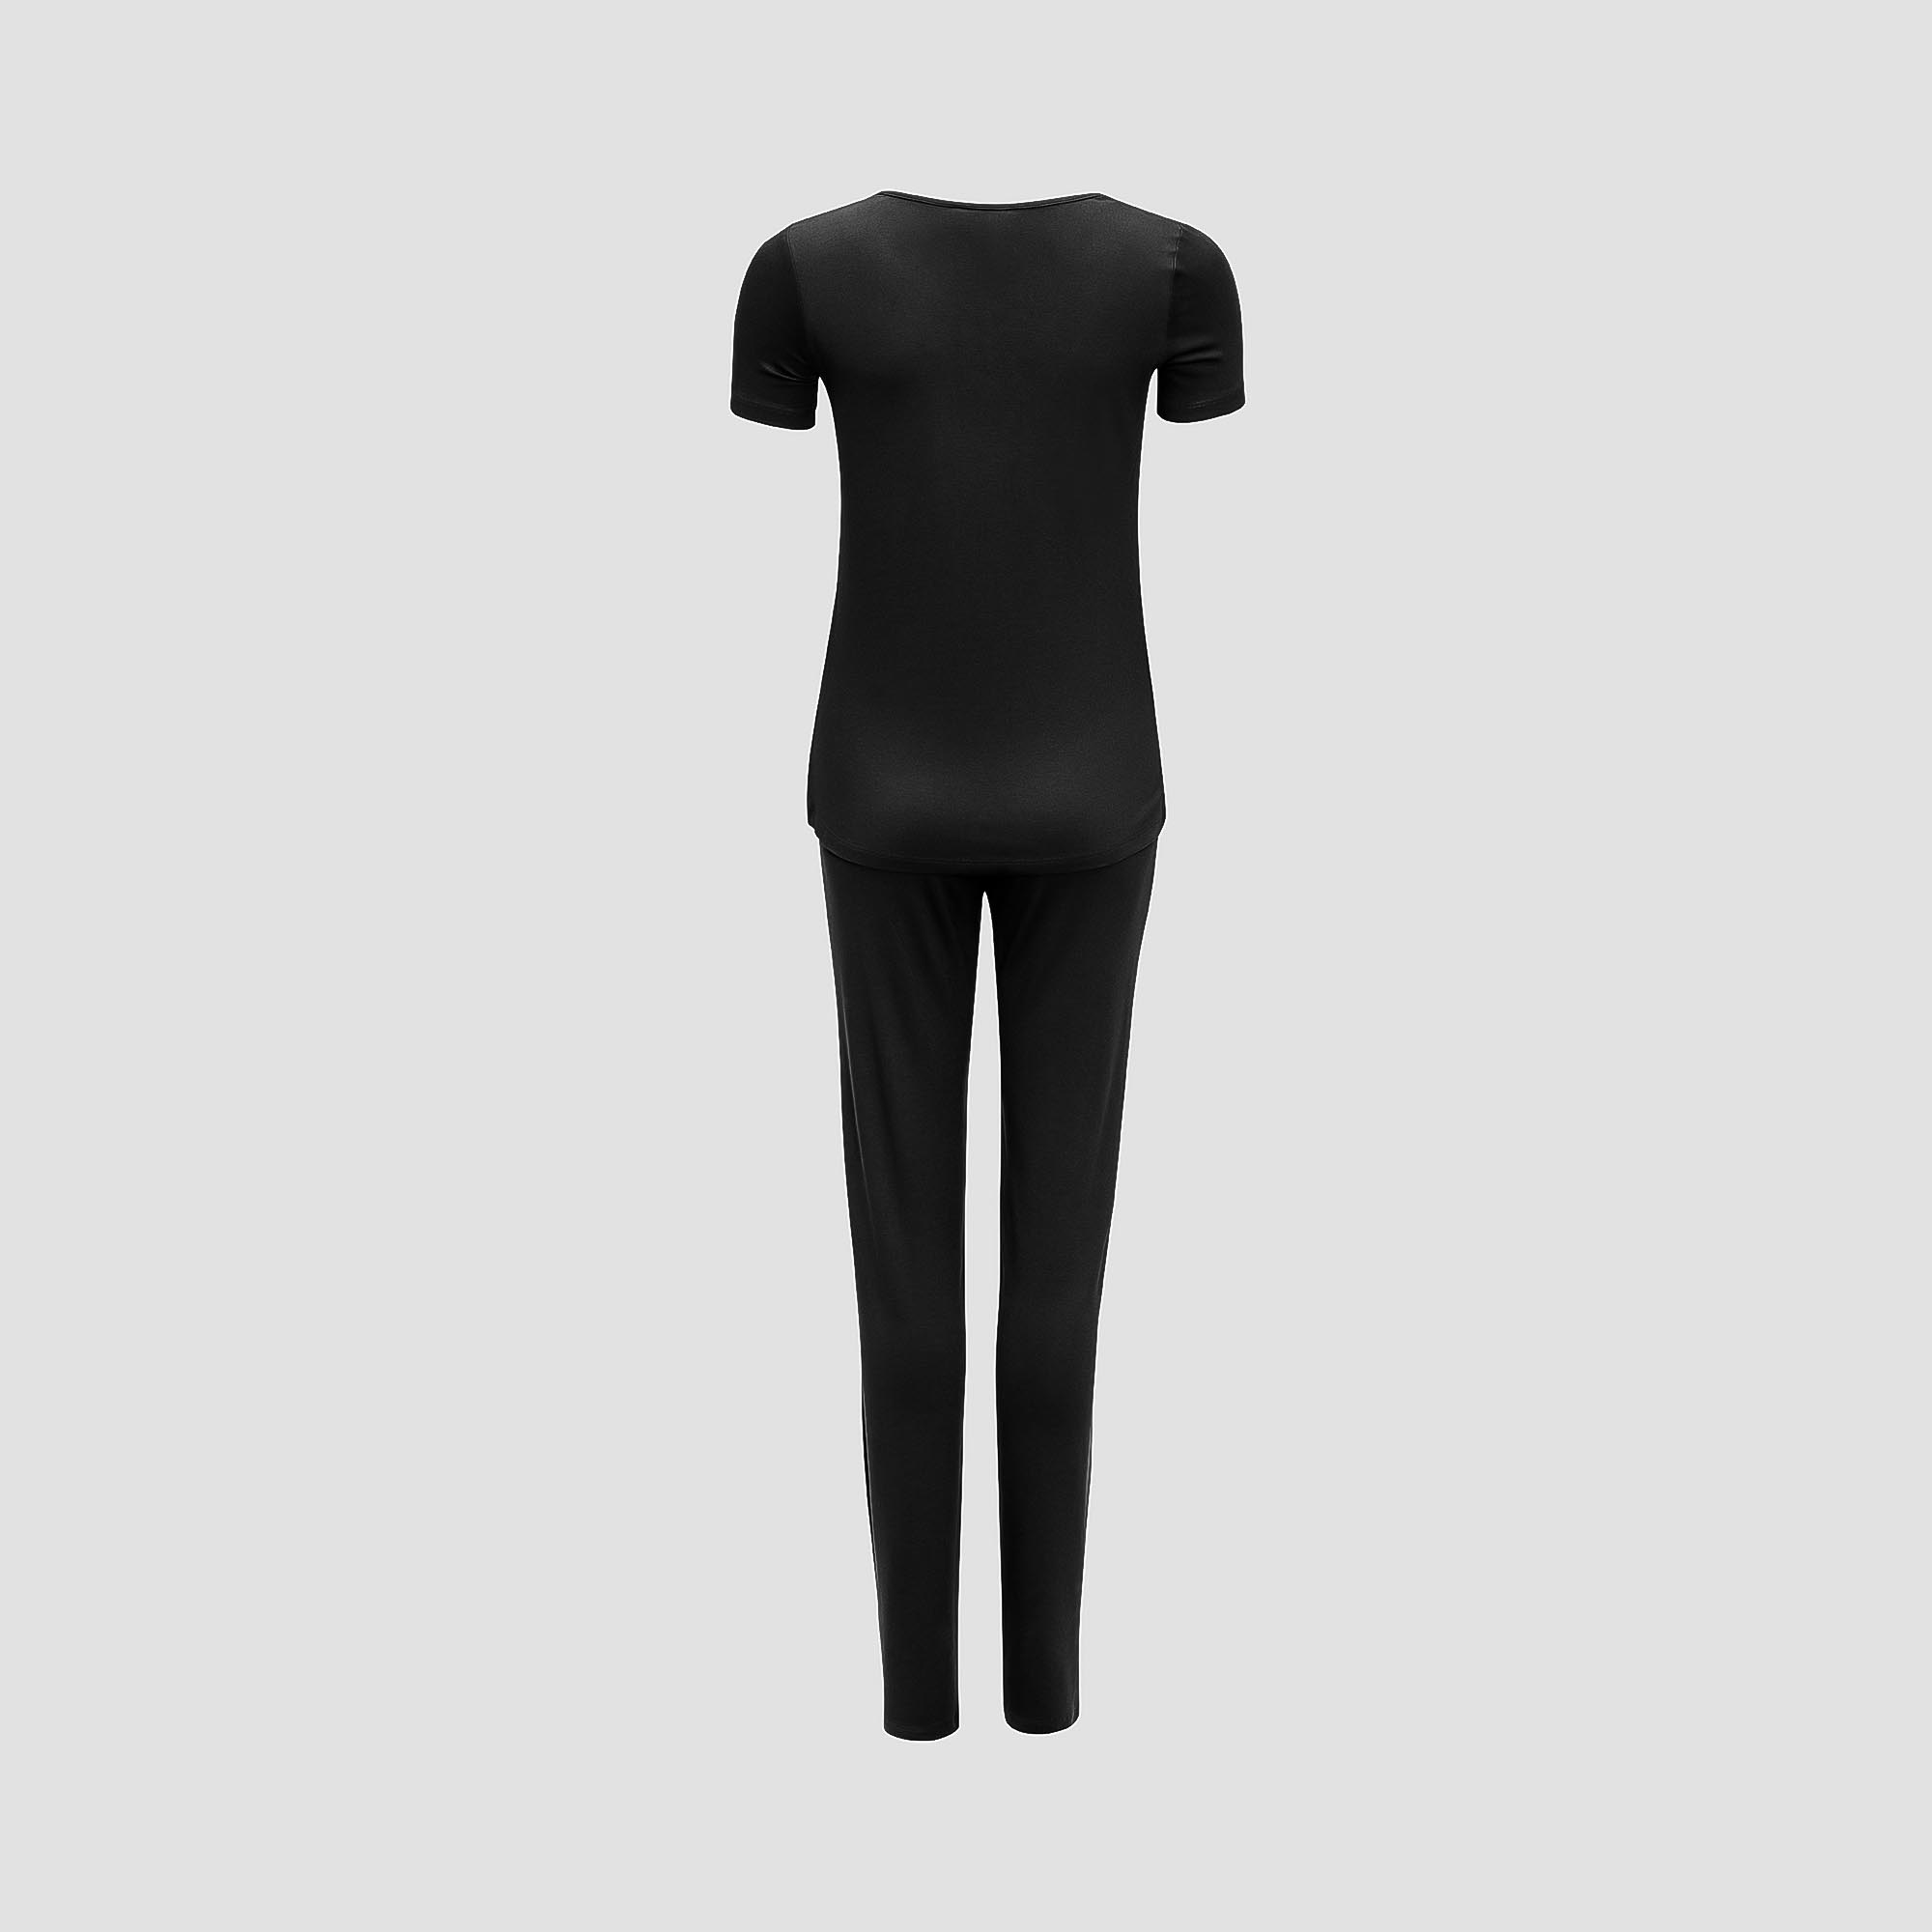 Пижама Togas Ингелла черная женская XXL(52) 2 предмета, размер XXL(52) - фото 3